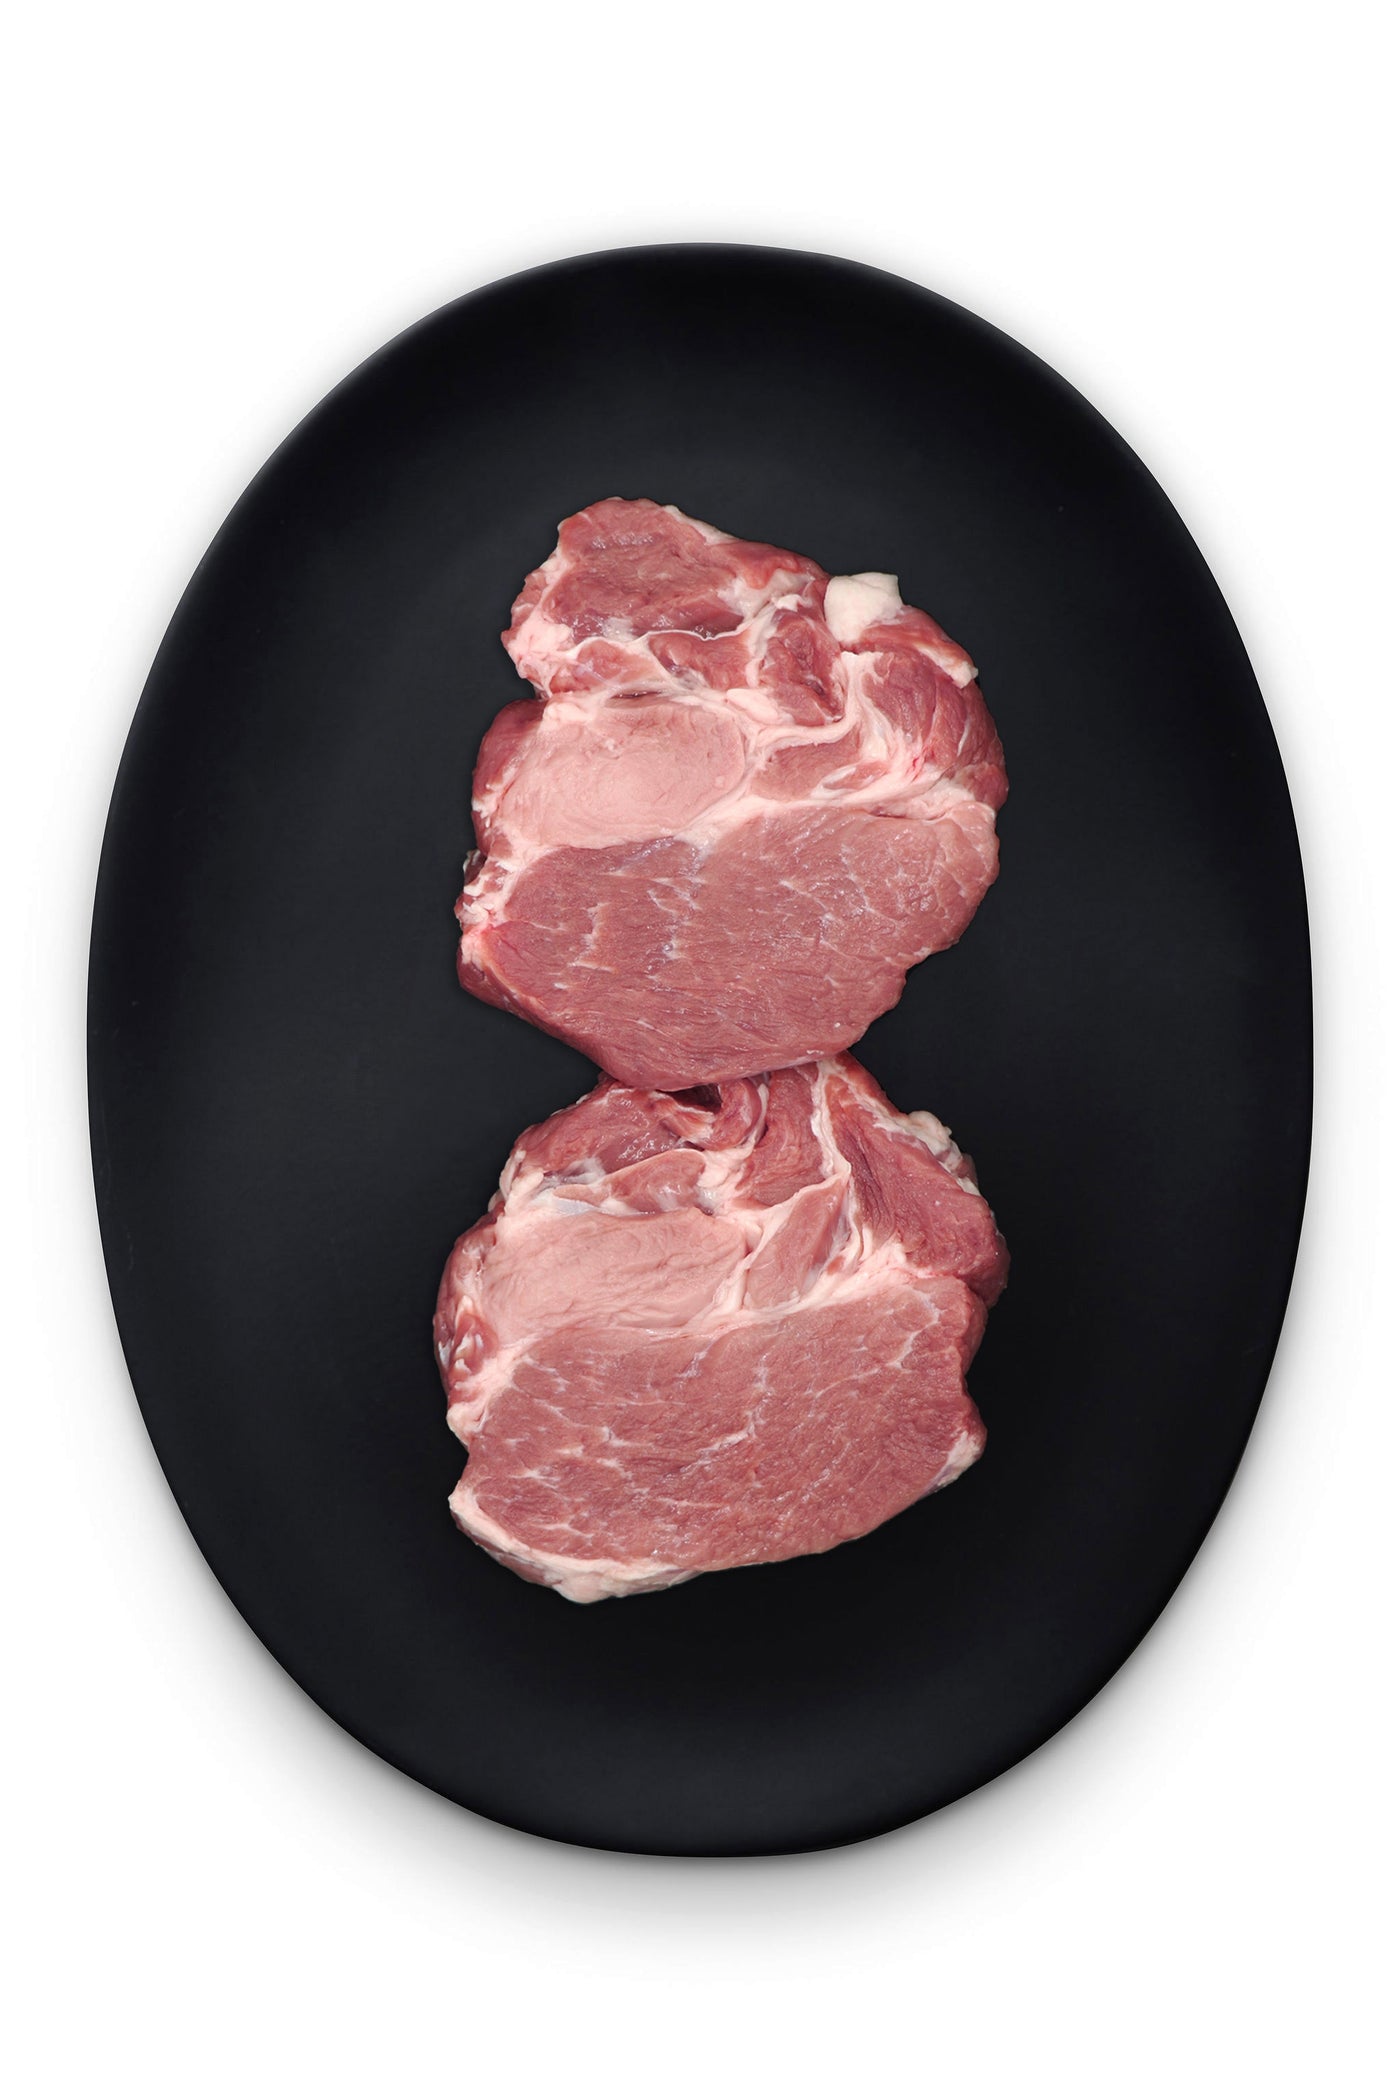 pork neck steaks